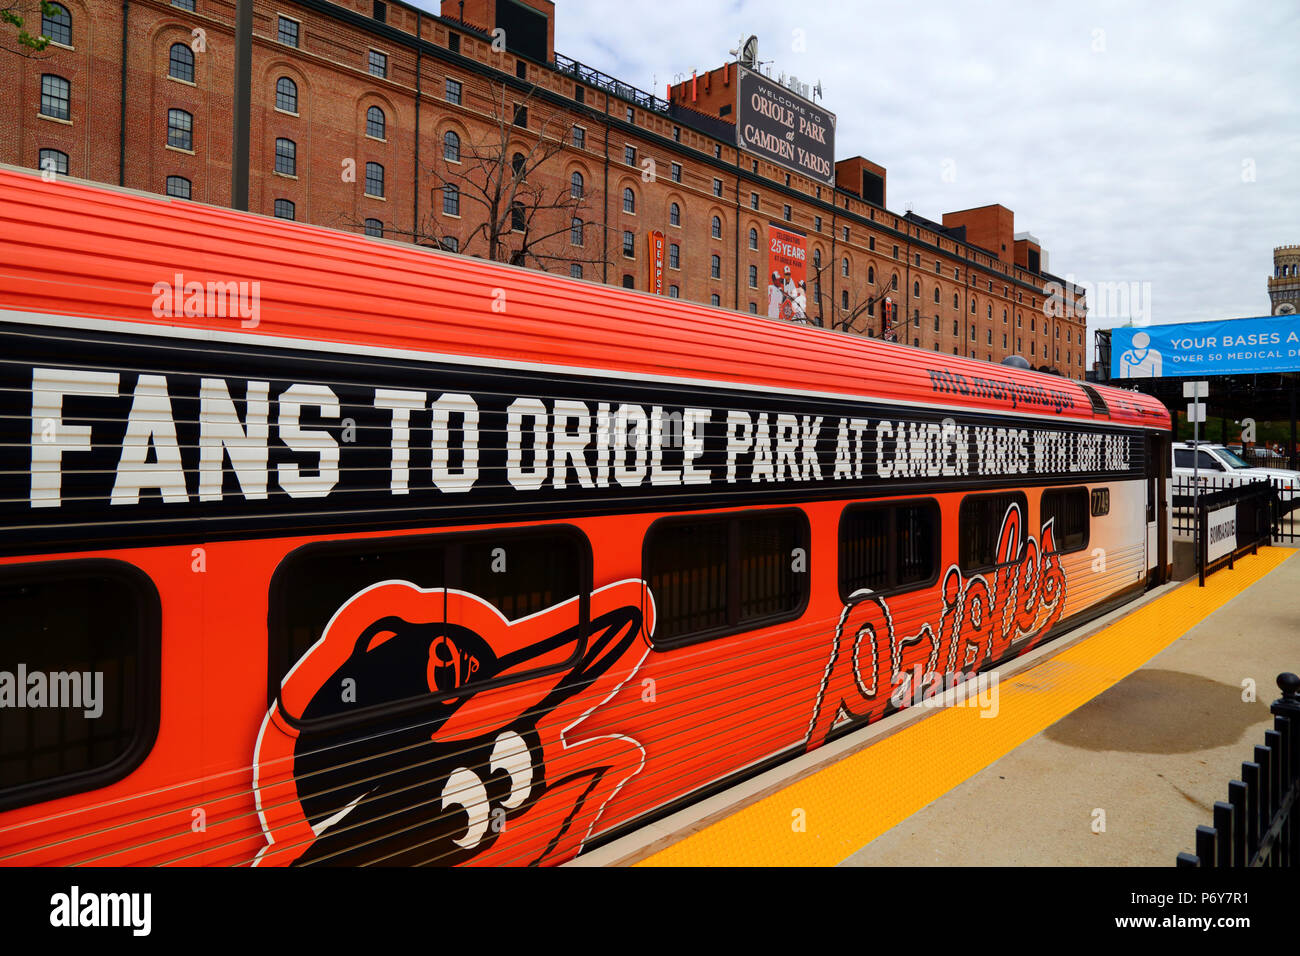 Light Rail coach peint pour célébrer les 25 ans de l'Oriole Park (accueil de l'équipe de baseball des orioles de Baltimore) à Camden Yards, Baltimore, Maryland, USA Banque D'Images